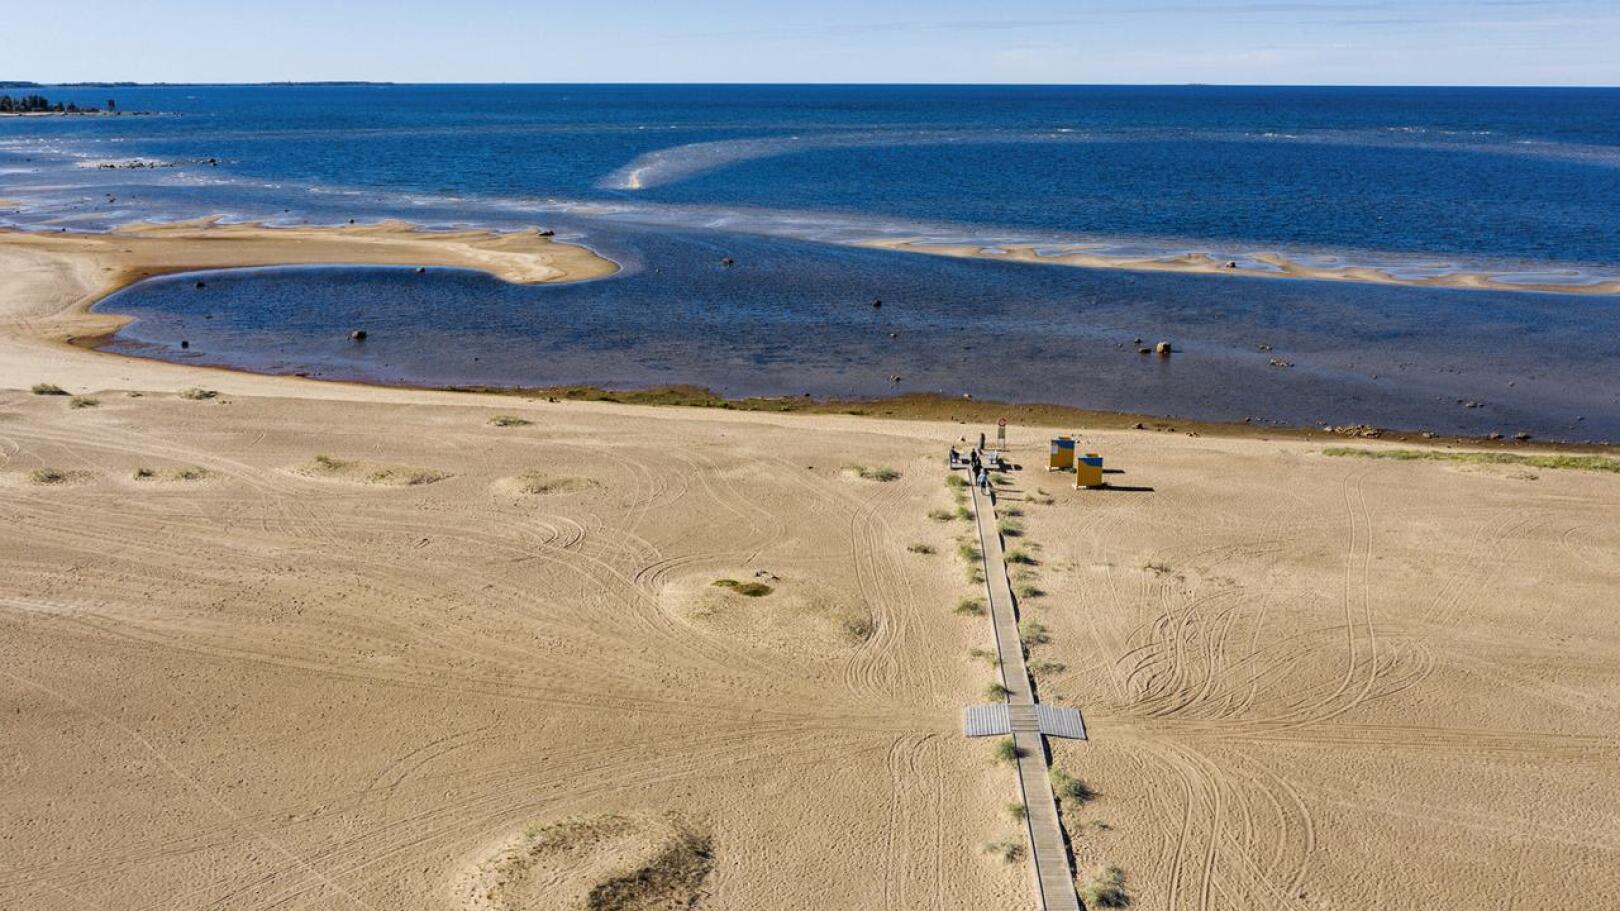 Hiekkasärkillä kulkeva Kalajoen rantareitti on yksi alueen suosituimmista luontoreiteistä.